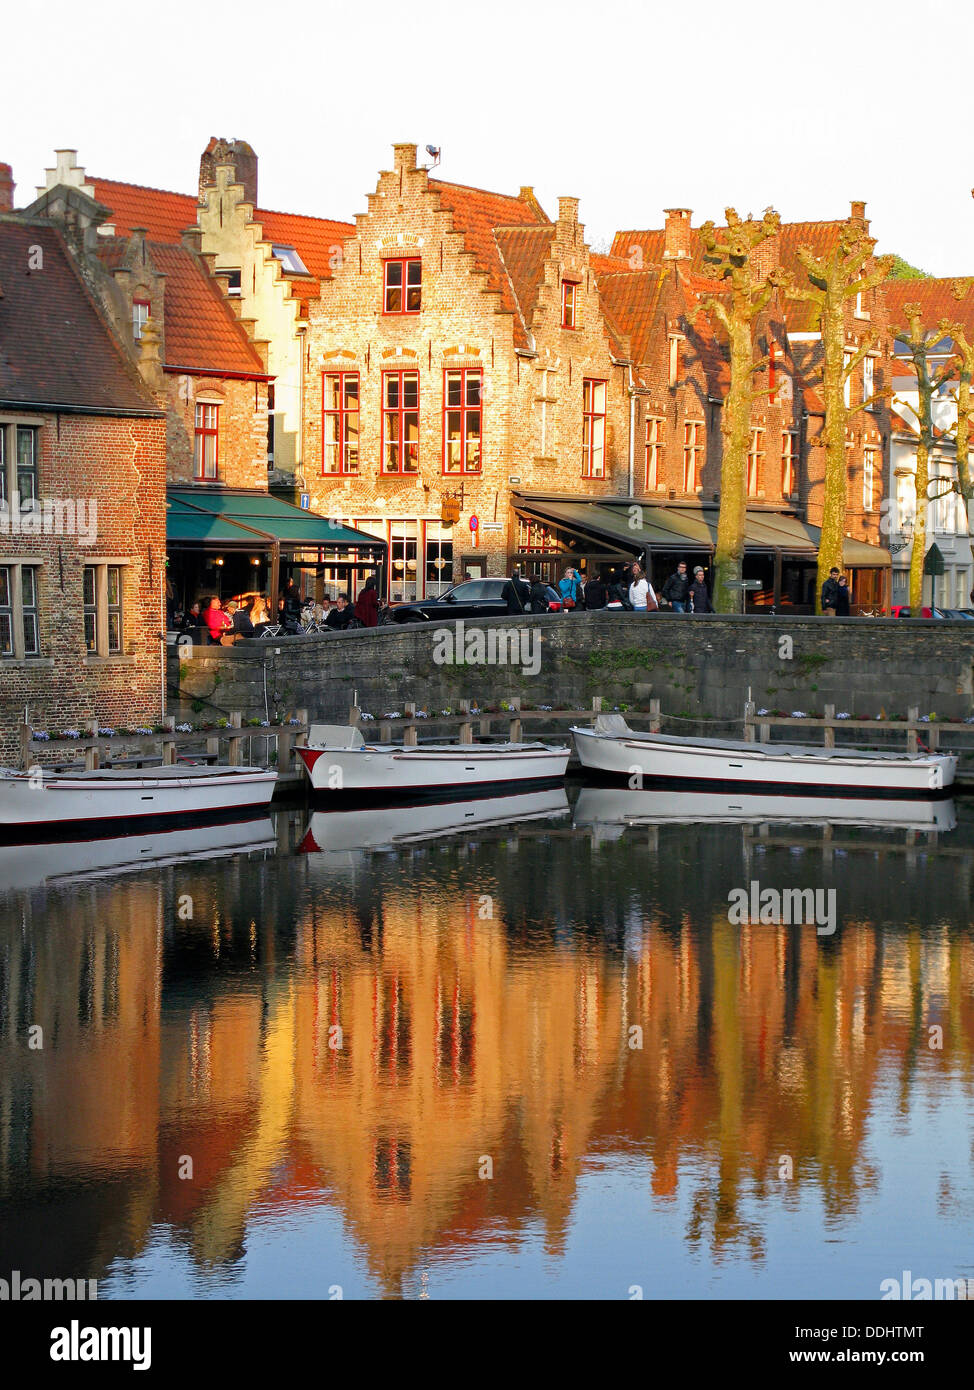 Guild Häuser mit Treppengiebeln reflektiert in einem Kanal mit Booten Stockfoto